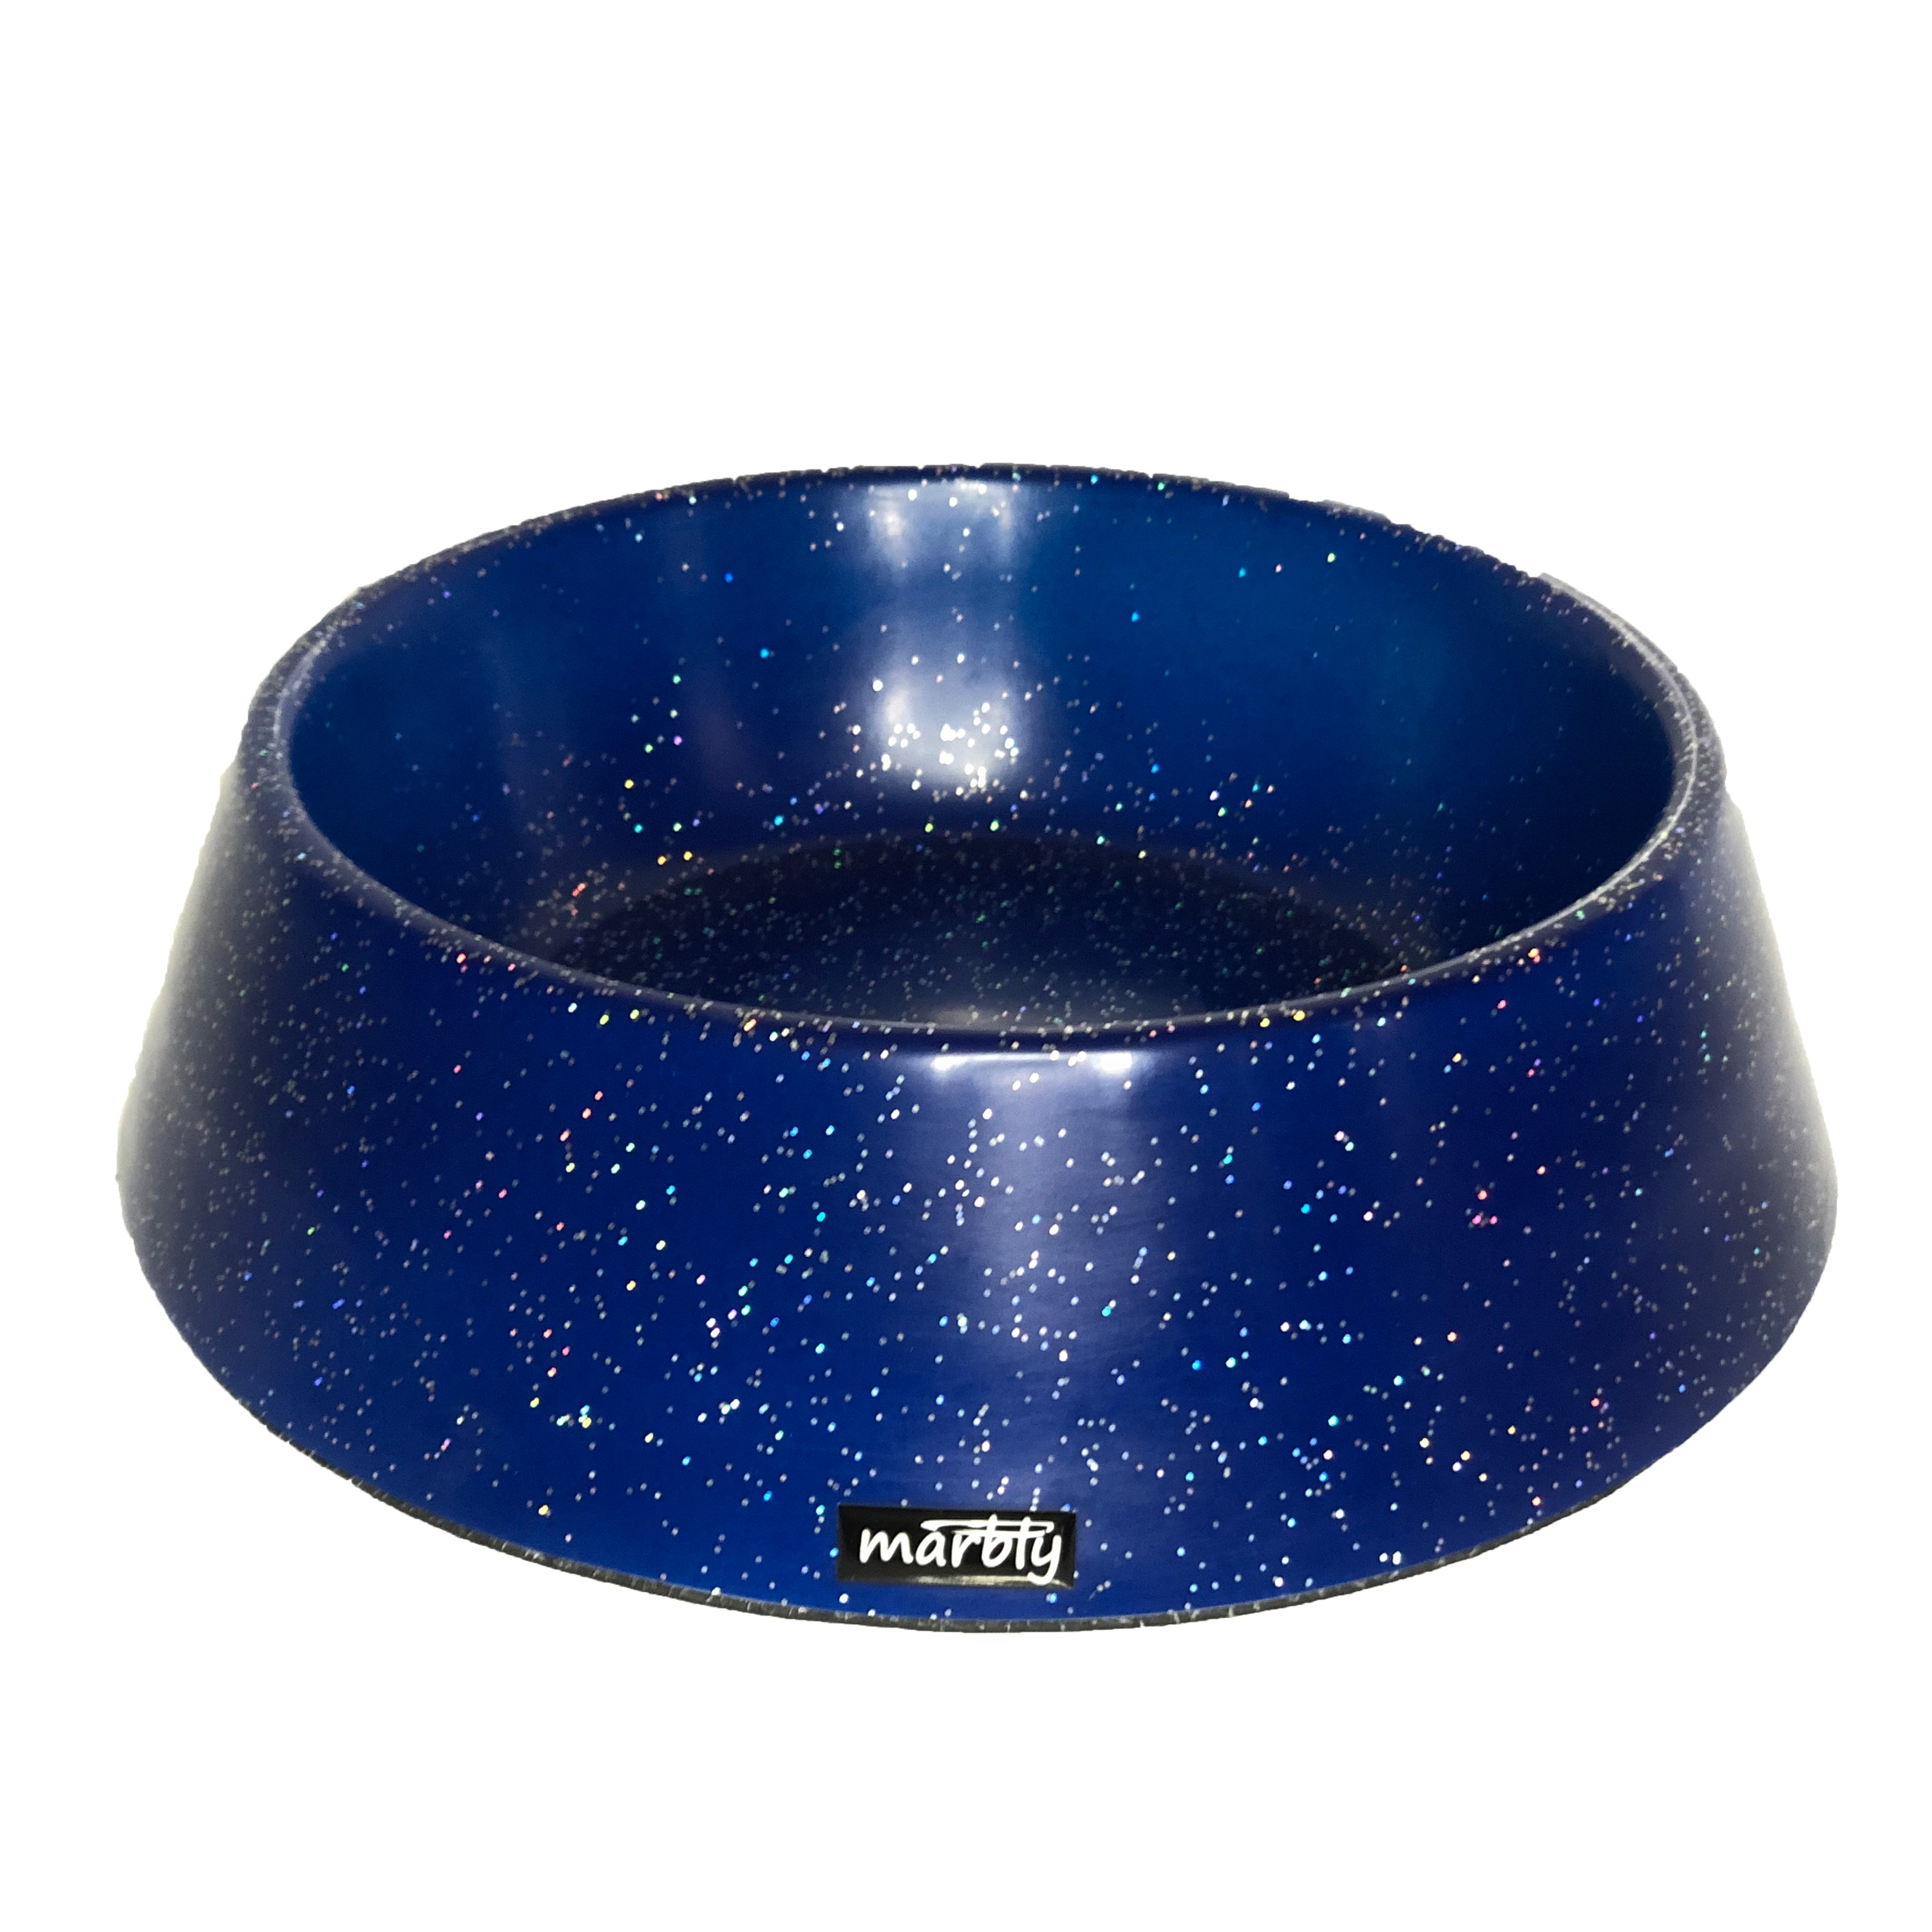 CLZ205 Marbly Mavi Galaxy Mermerit Köpek Mama Su Kabı 1000 ml